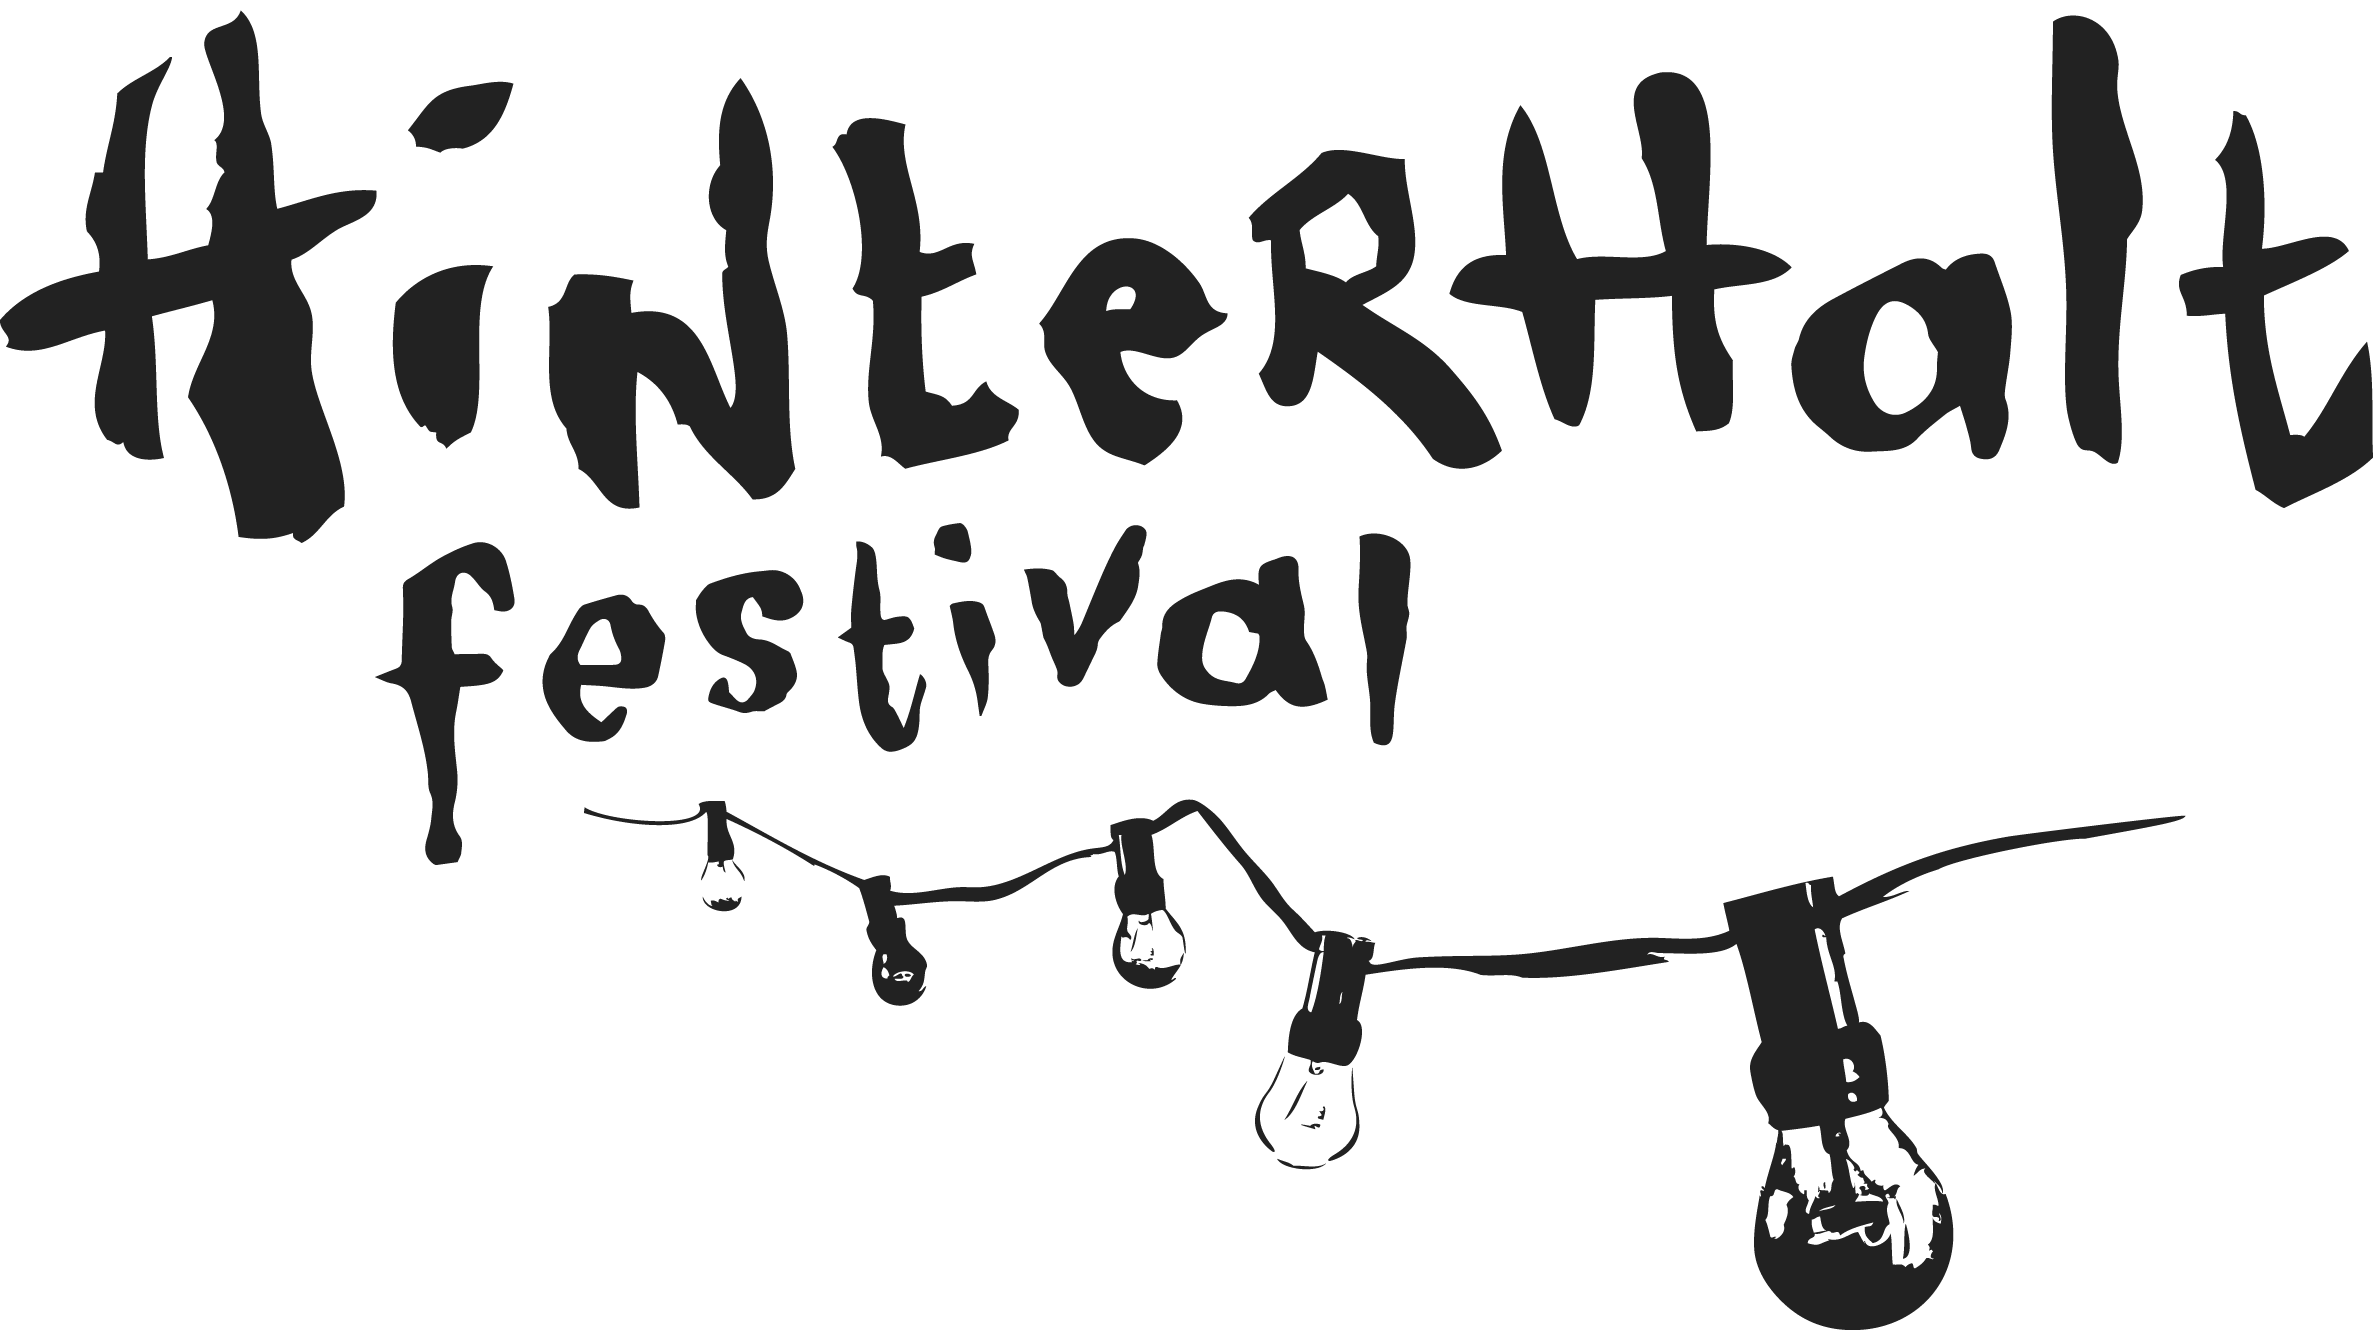 Hinterhalt Festival 2018 - Uster